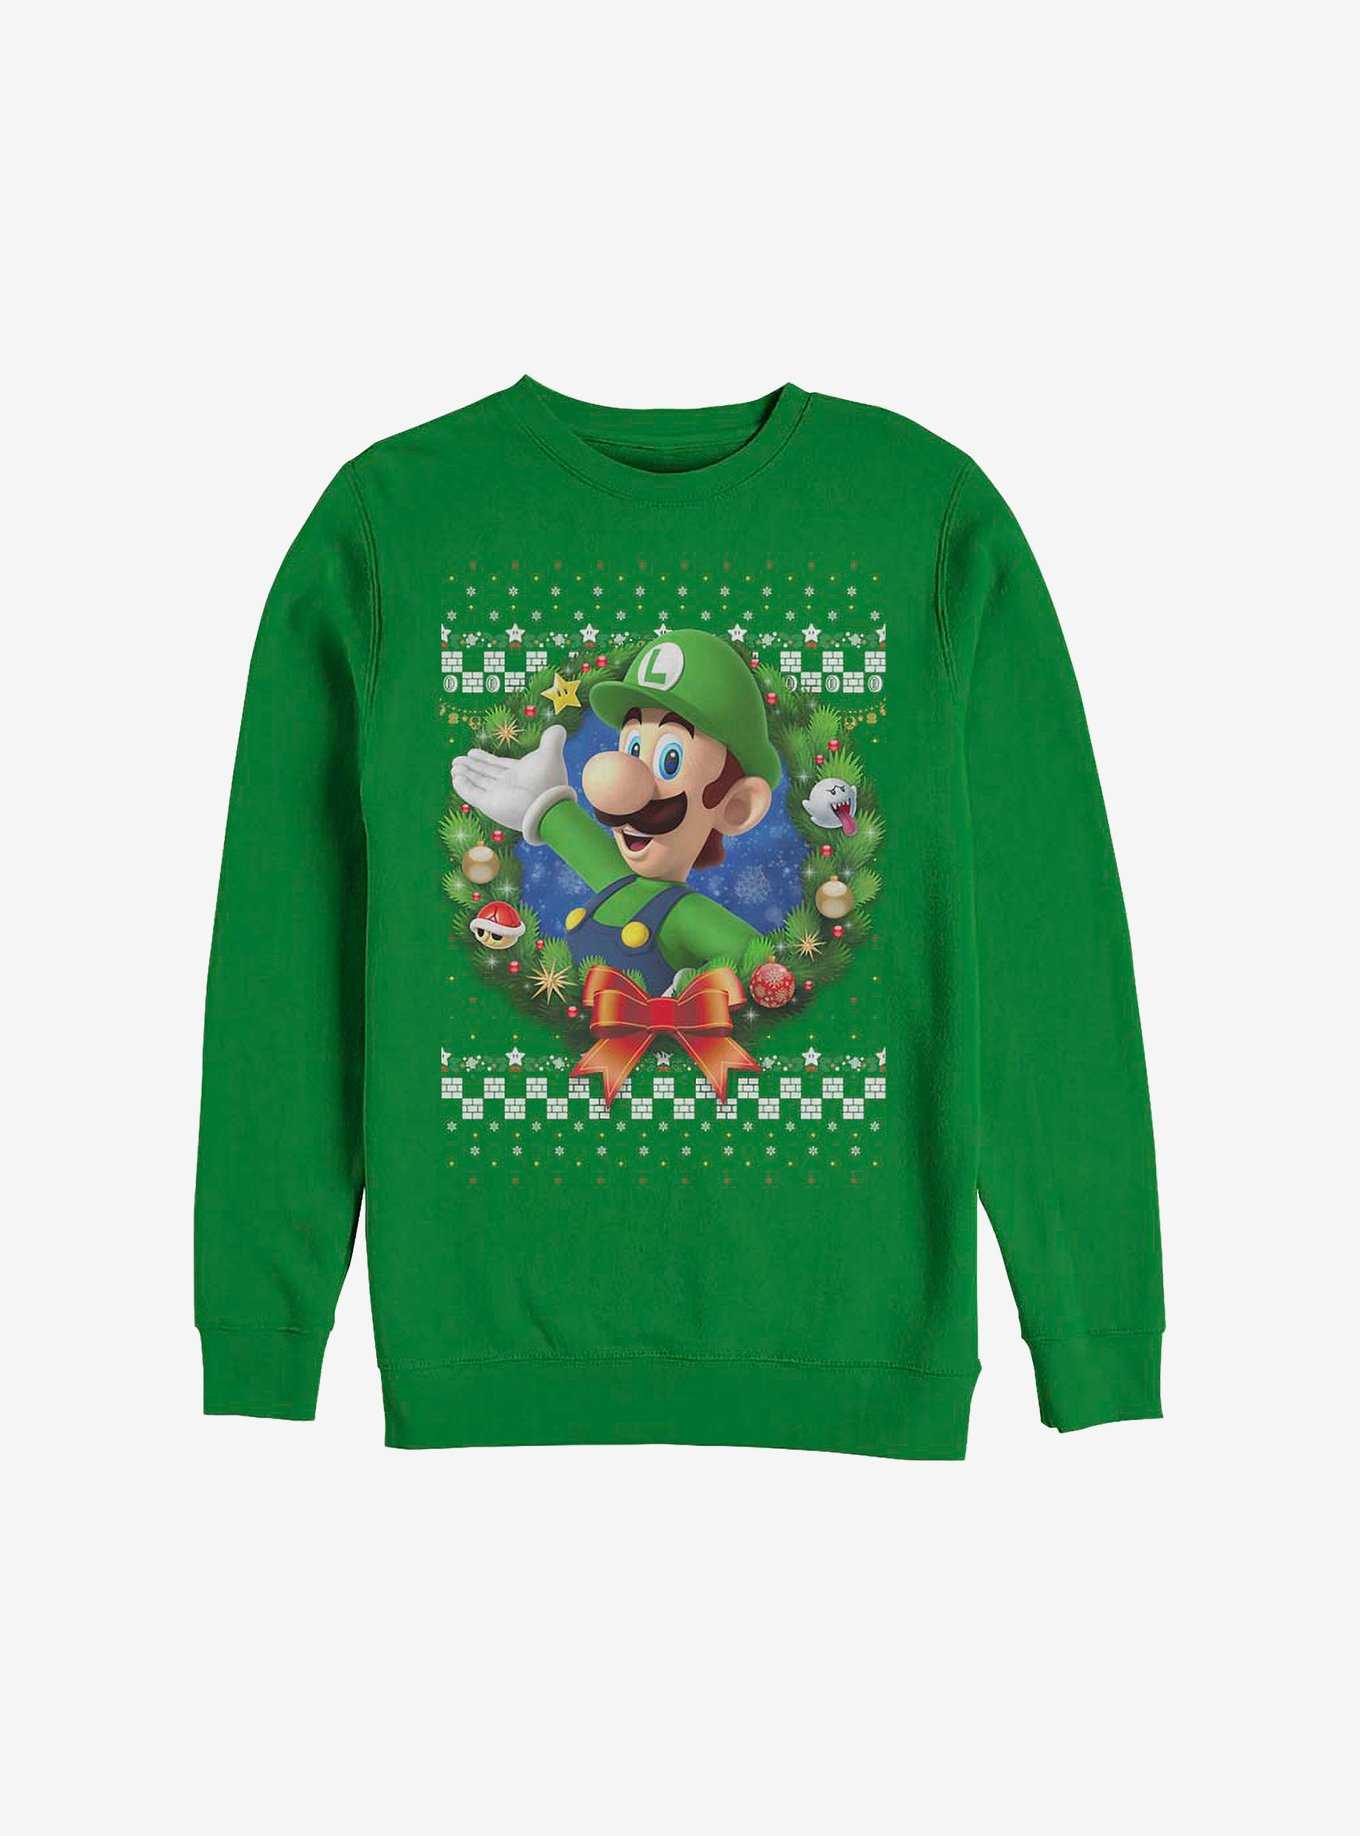 Super Mario Luigi Wreath Holiday Sweatshirt, , hi-res